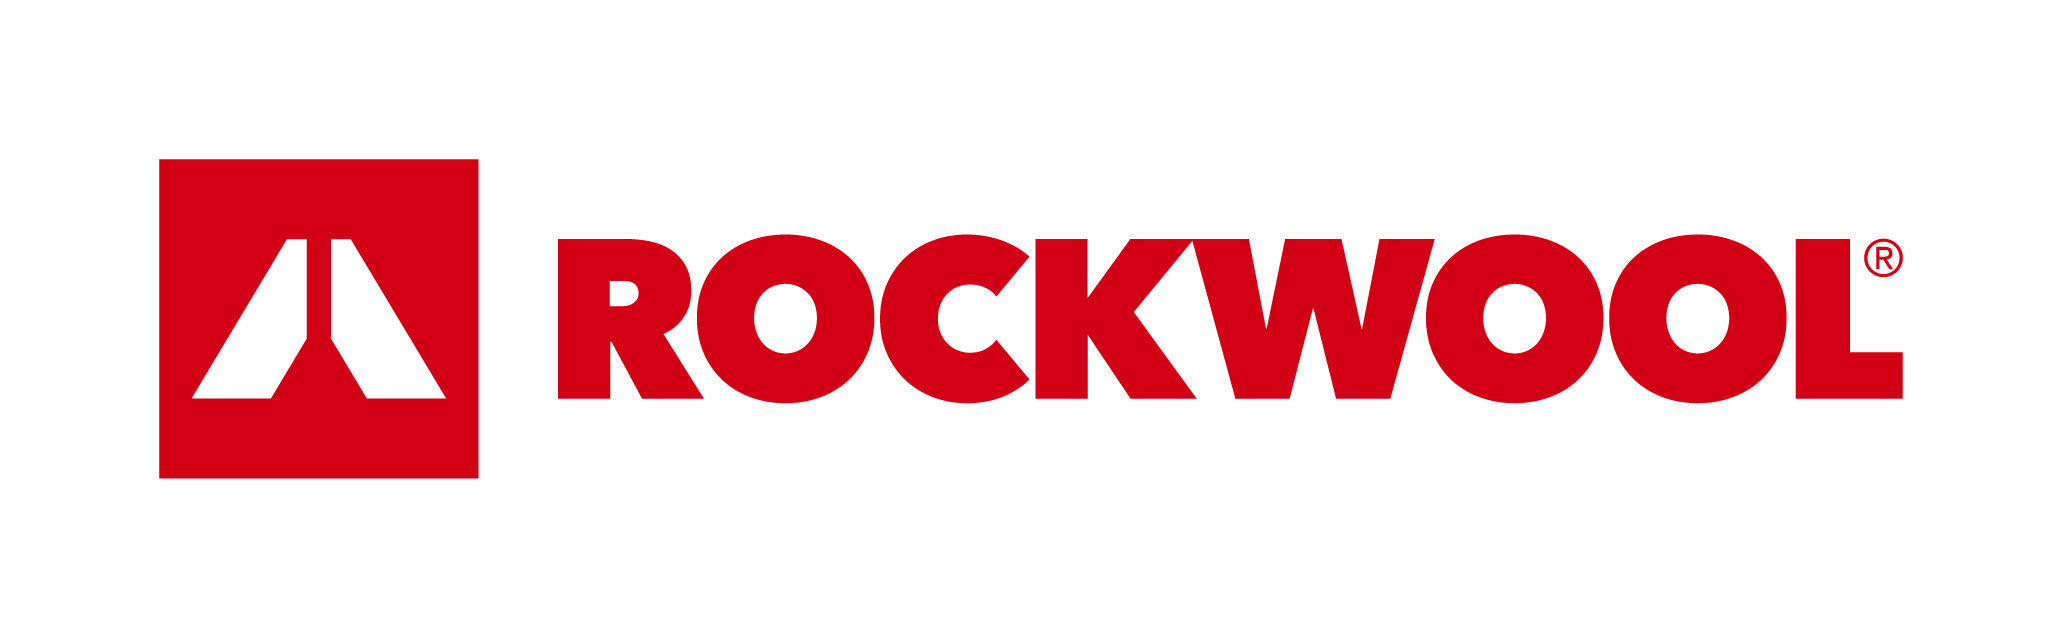 rockwool iic74